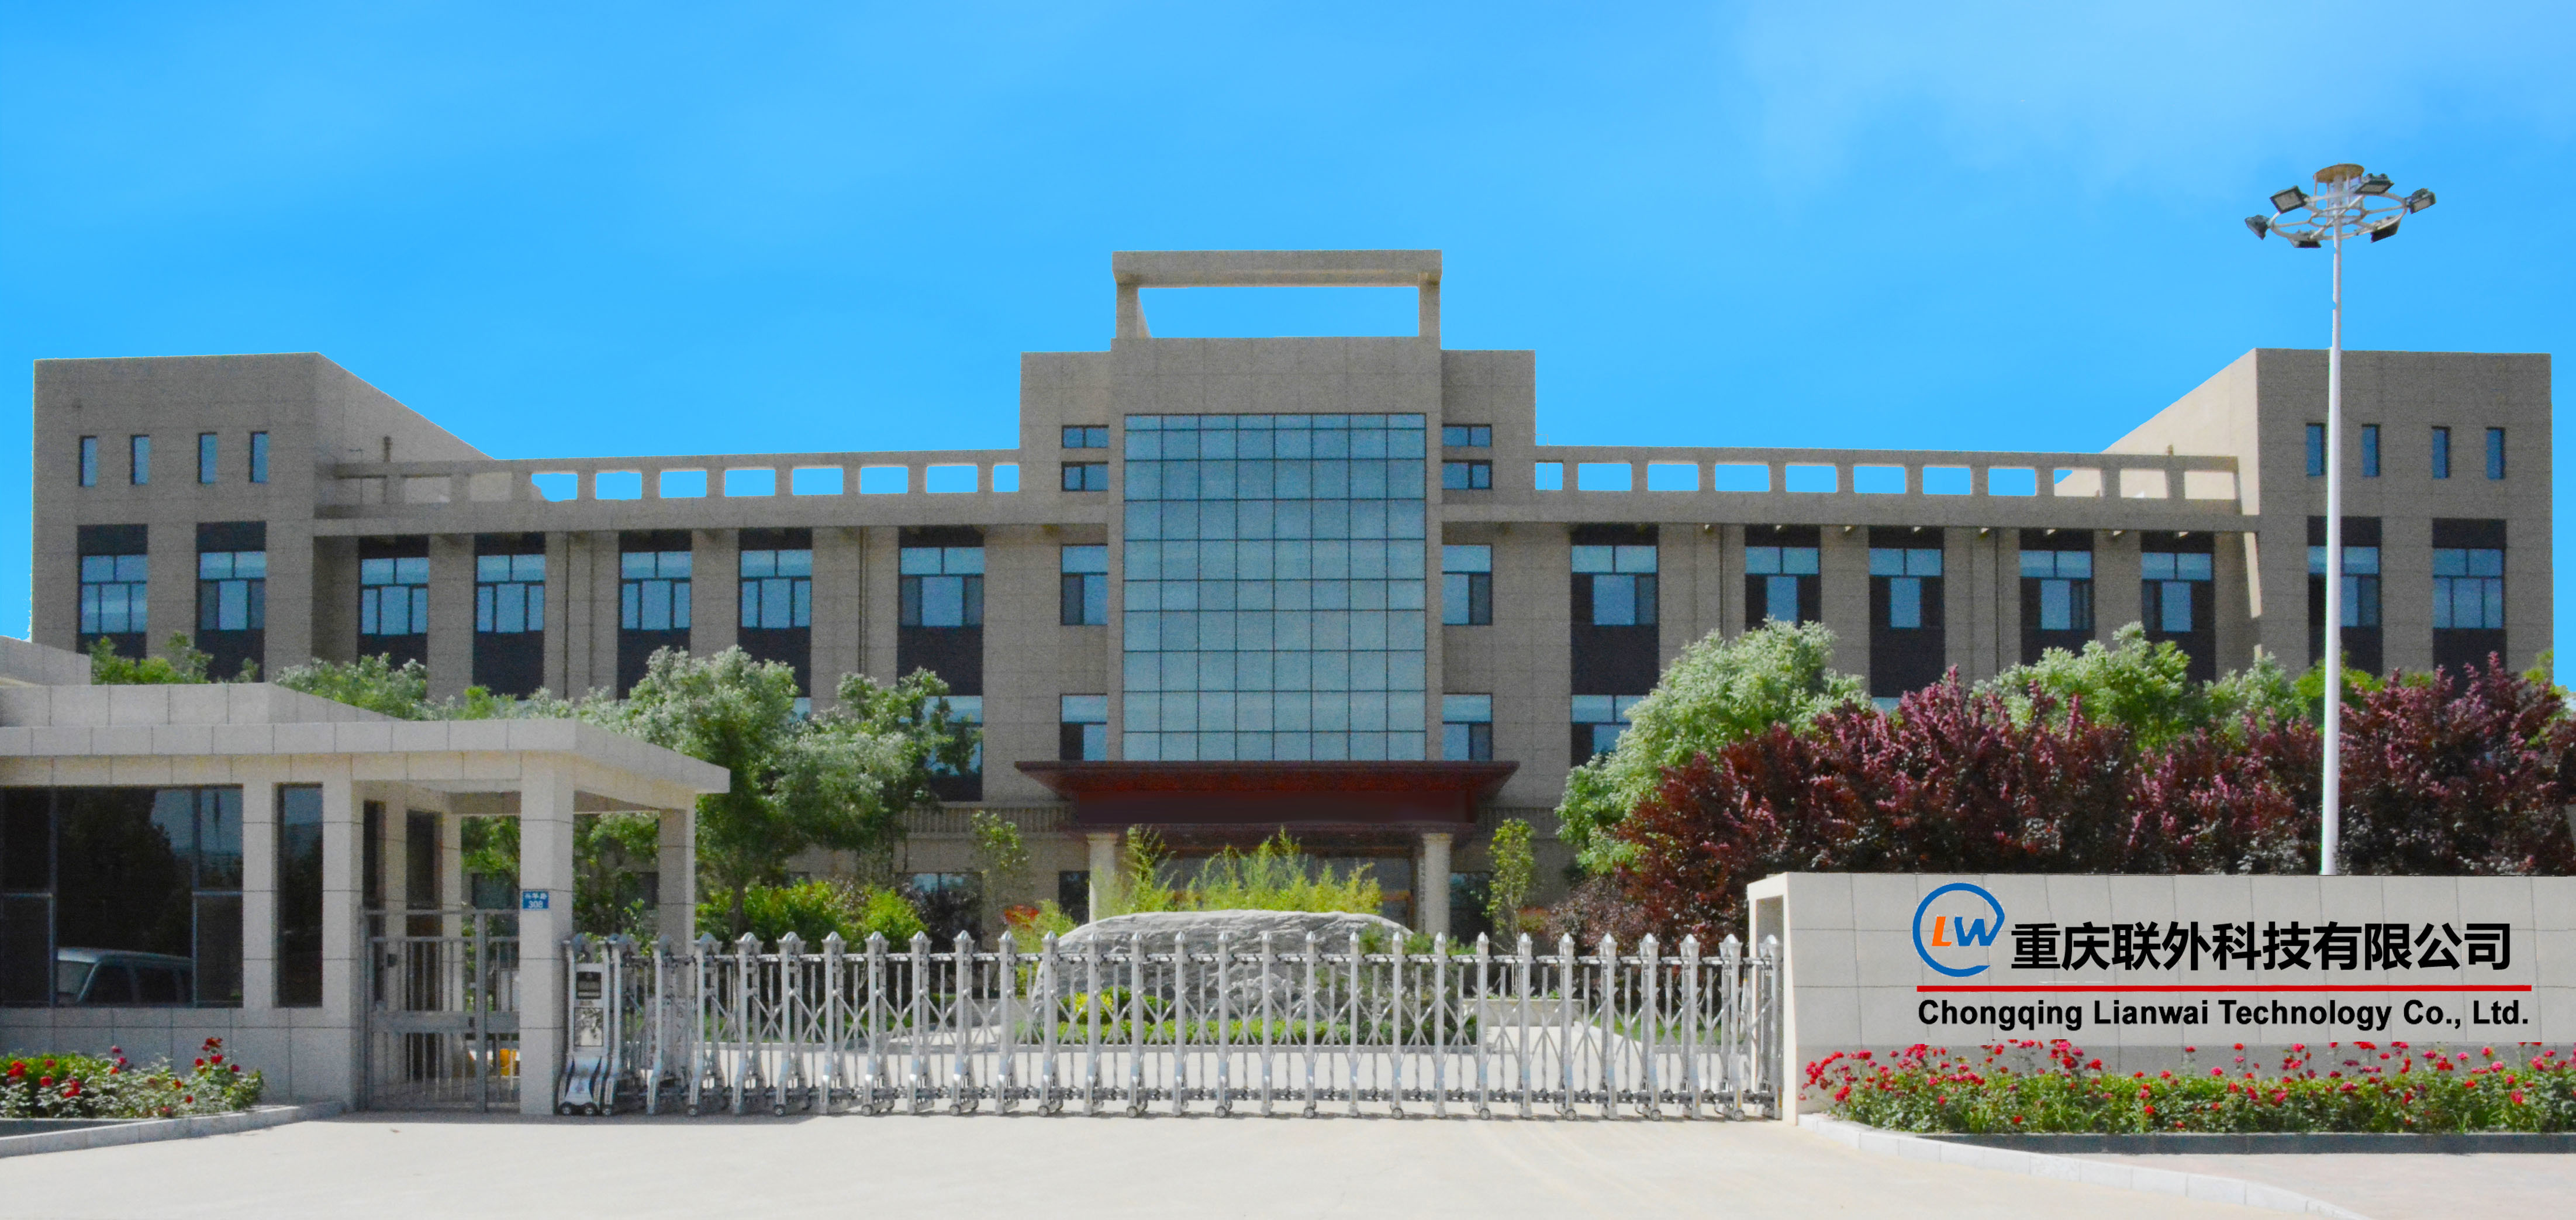 China Chongqing Lianwai Technology Co., Ltd.